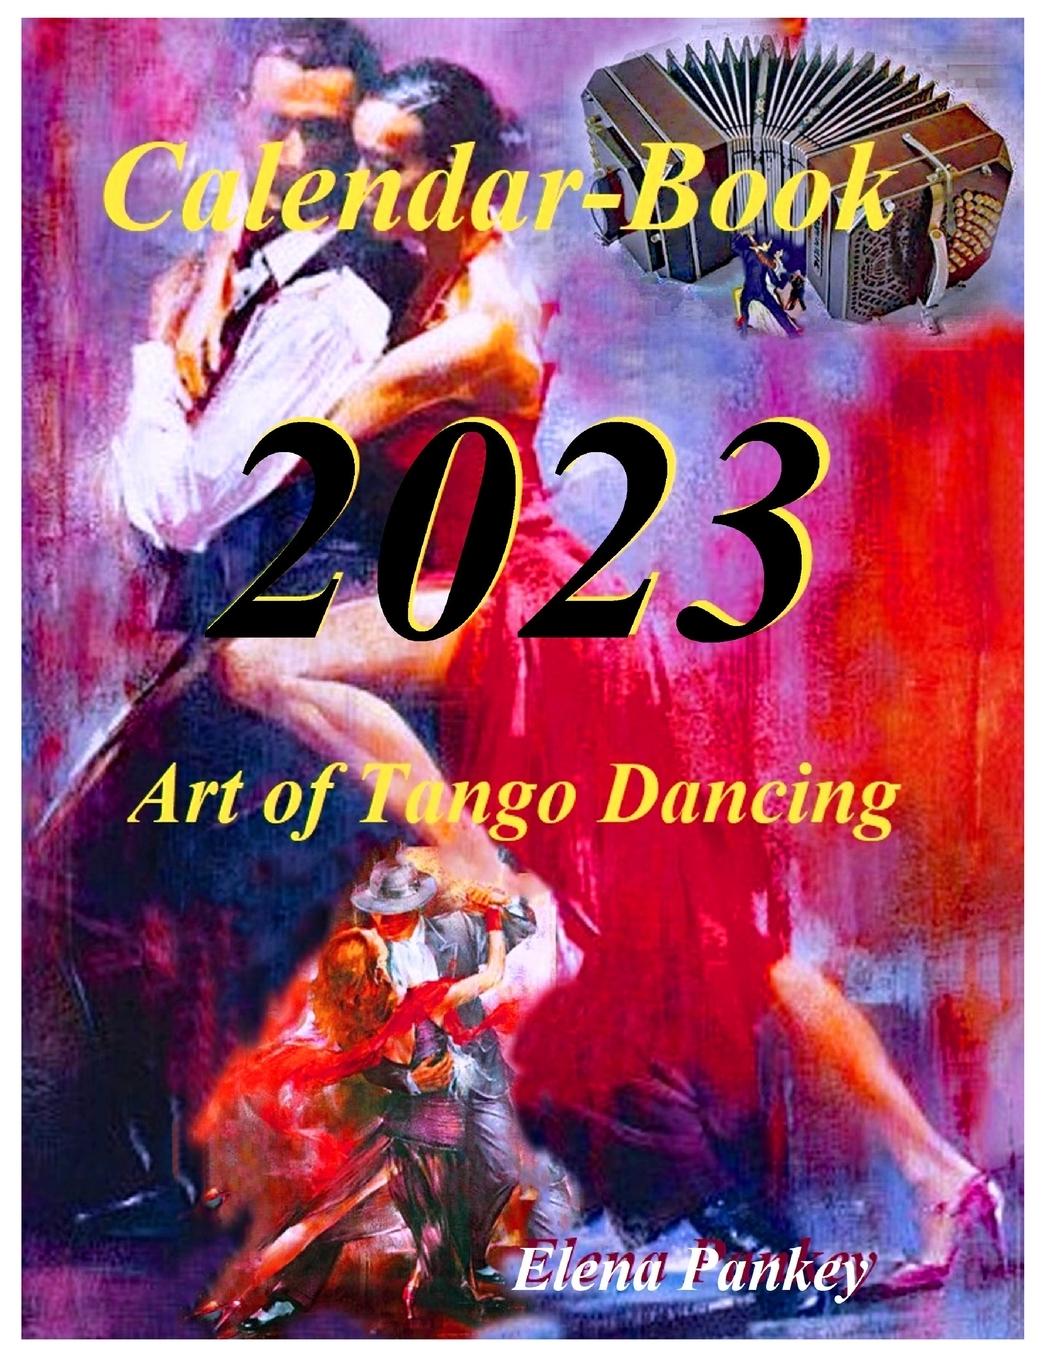 Kniha Art of Tango Dancing. Calendar-Book. 2023 